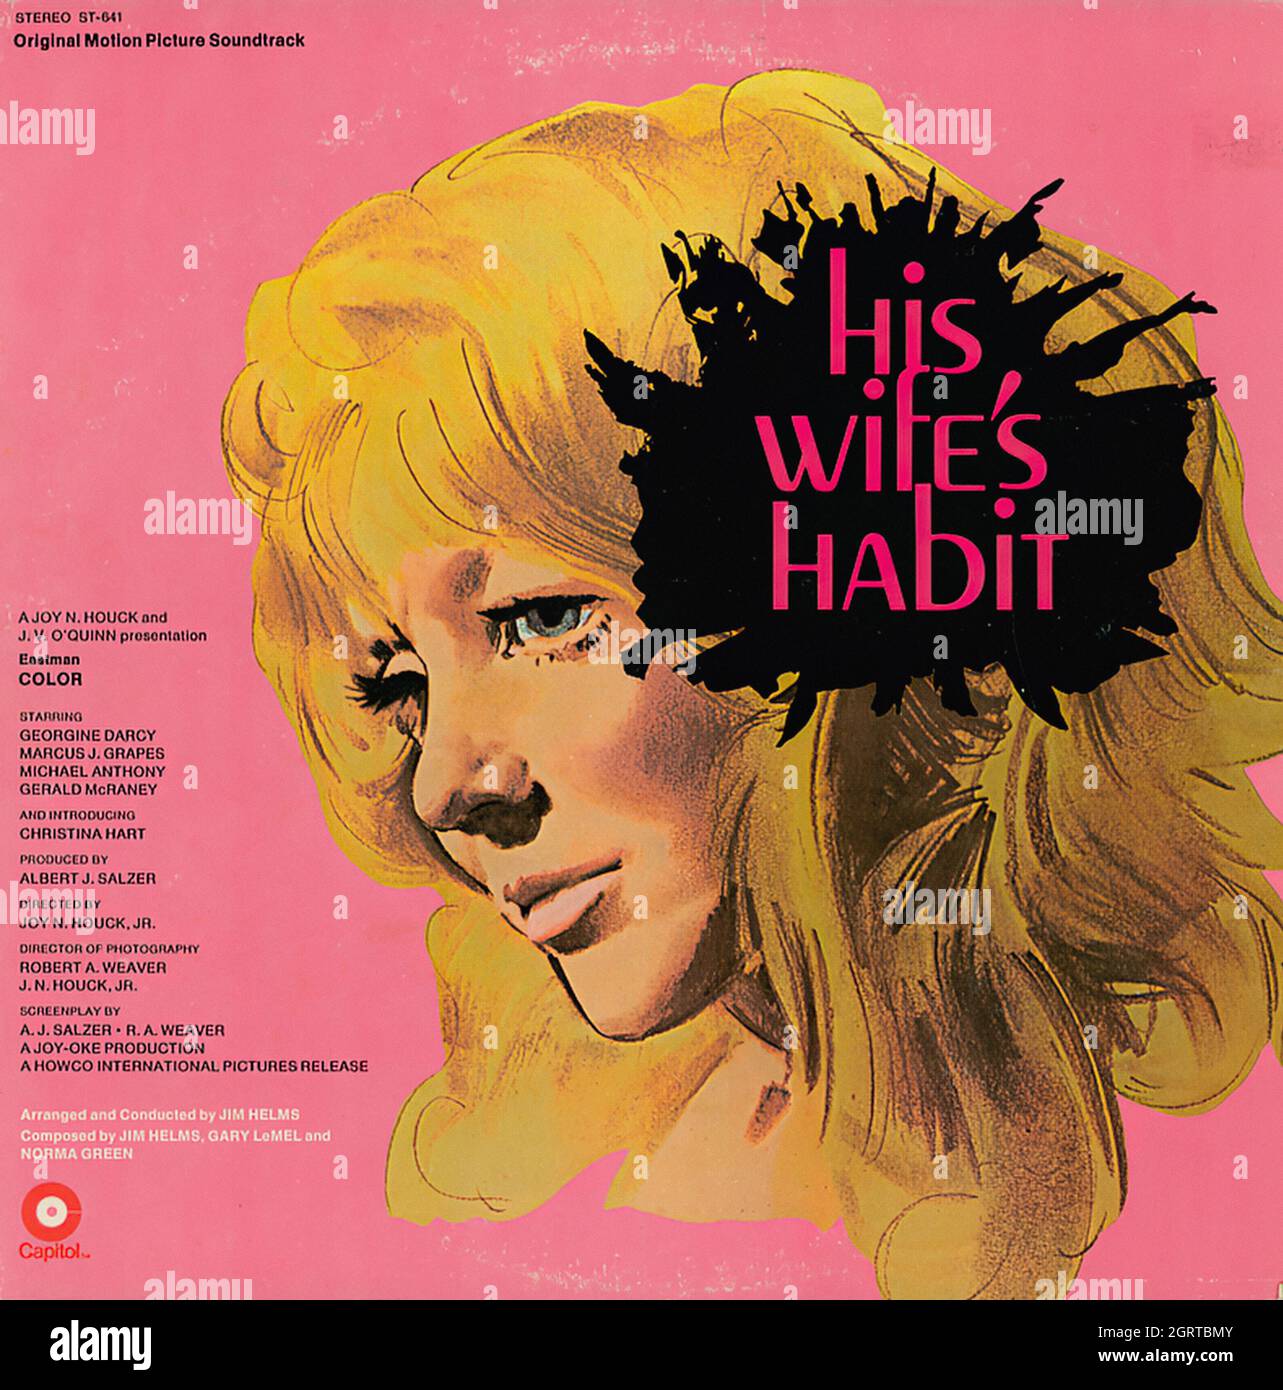 His Wife's Habit - Vintage Soundtrack Vinyl Album Stock Photo